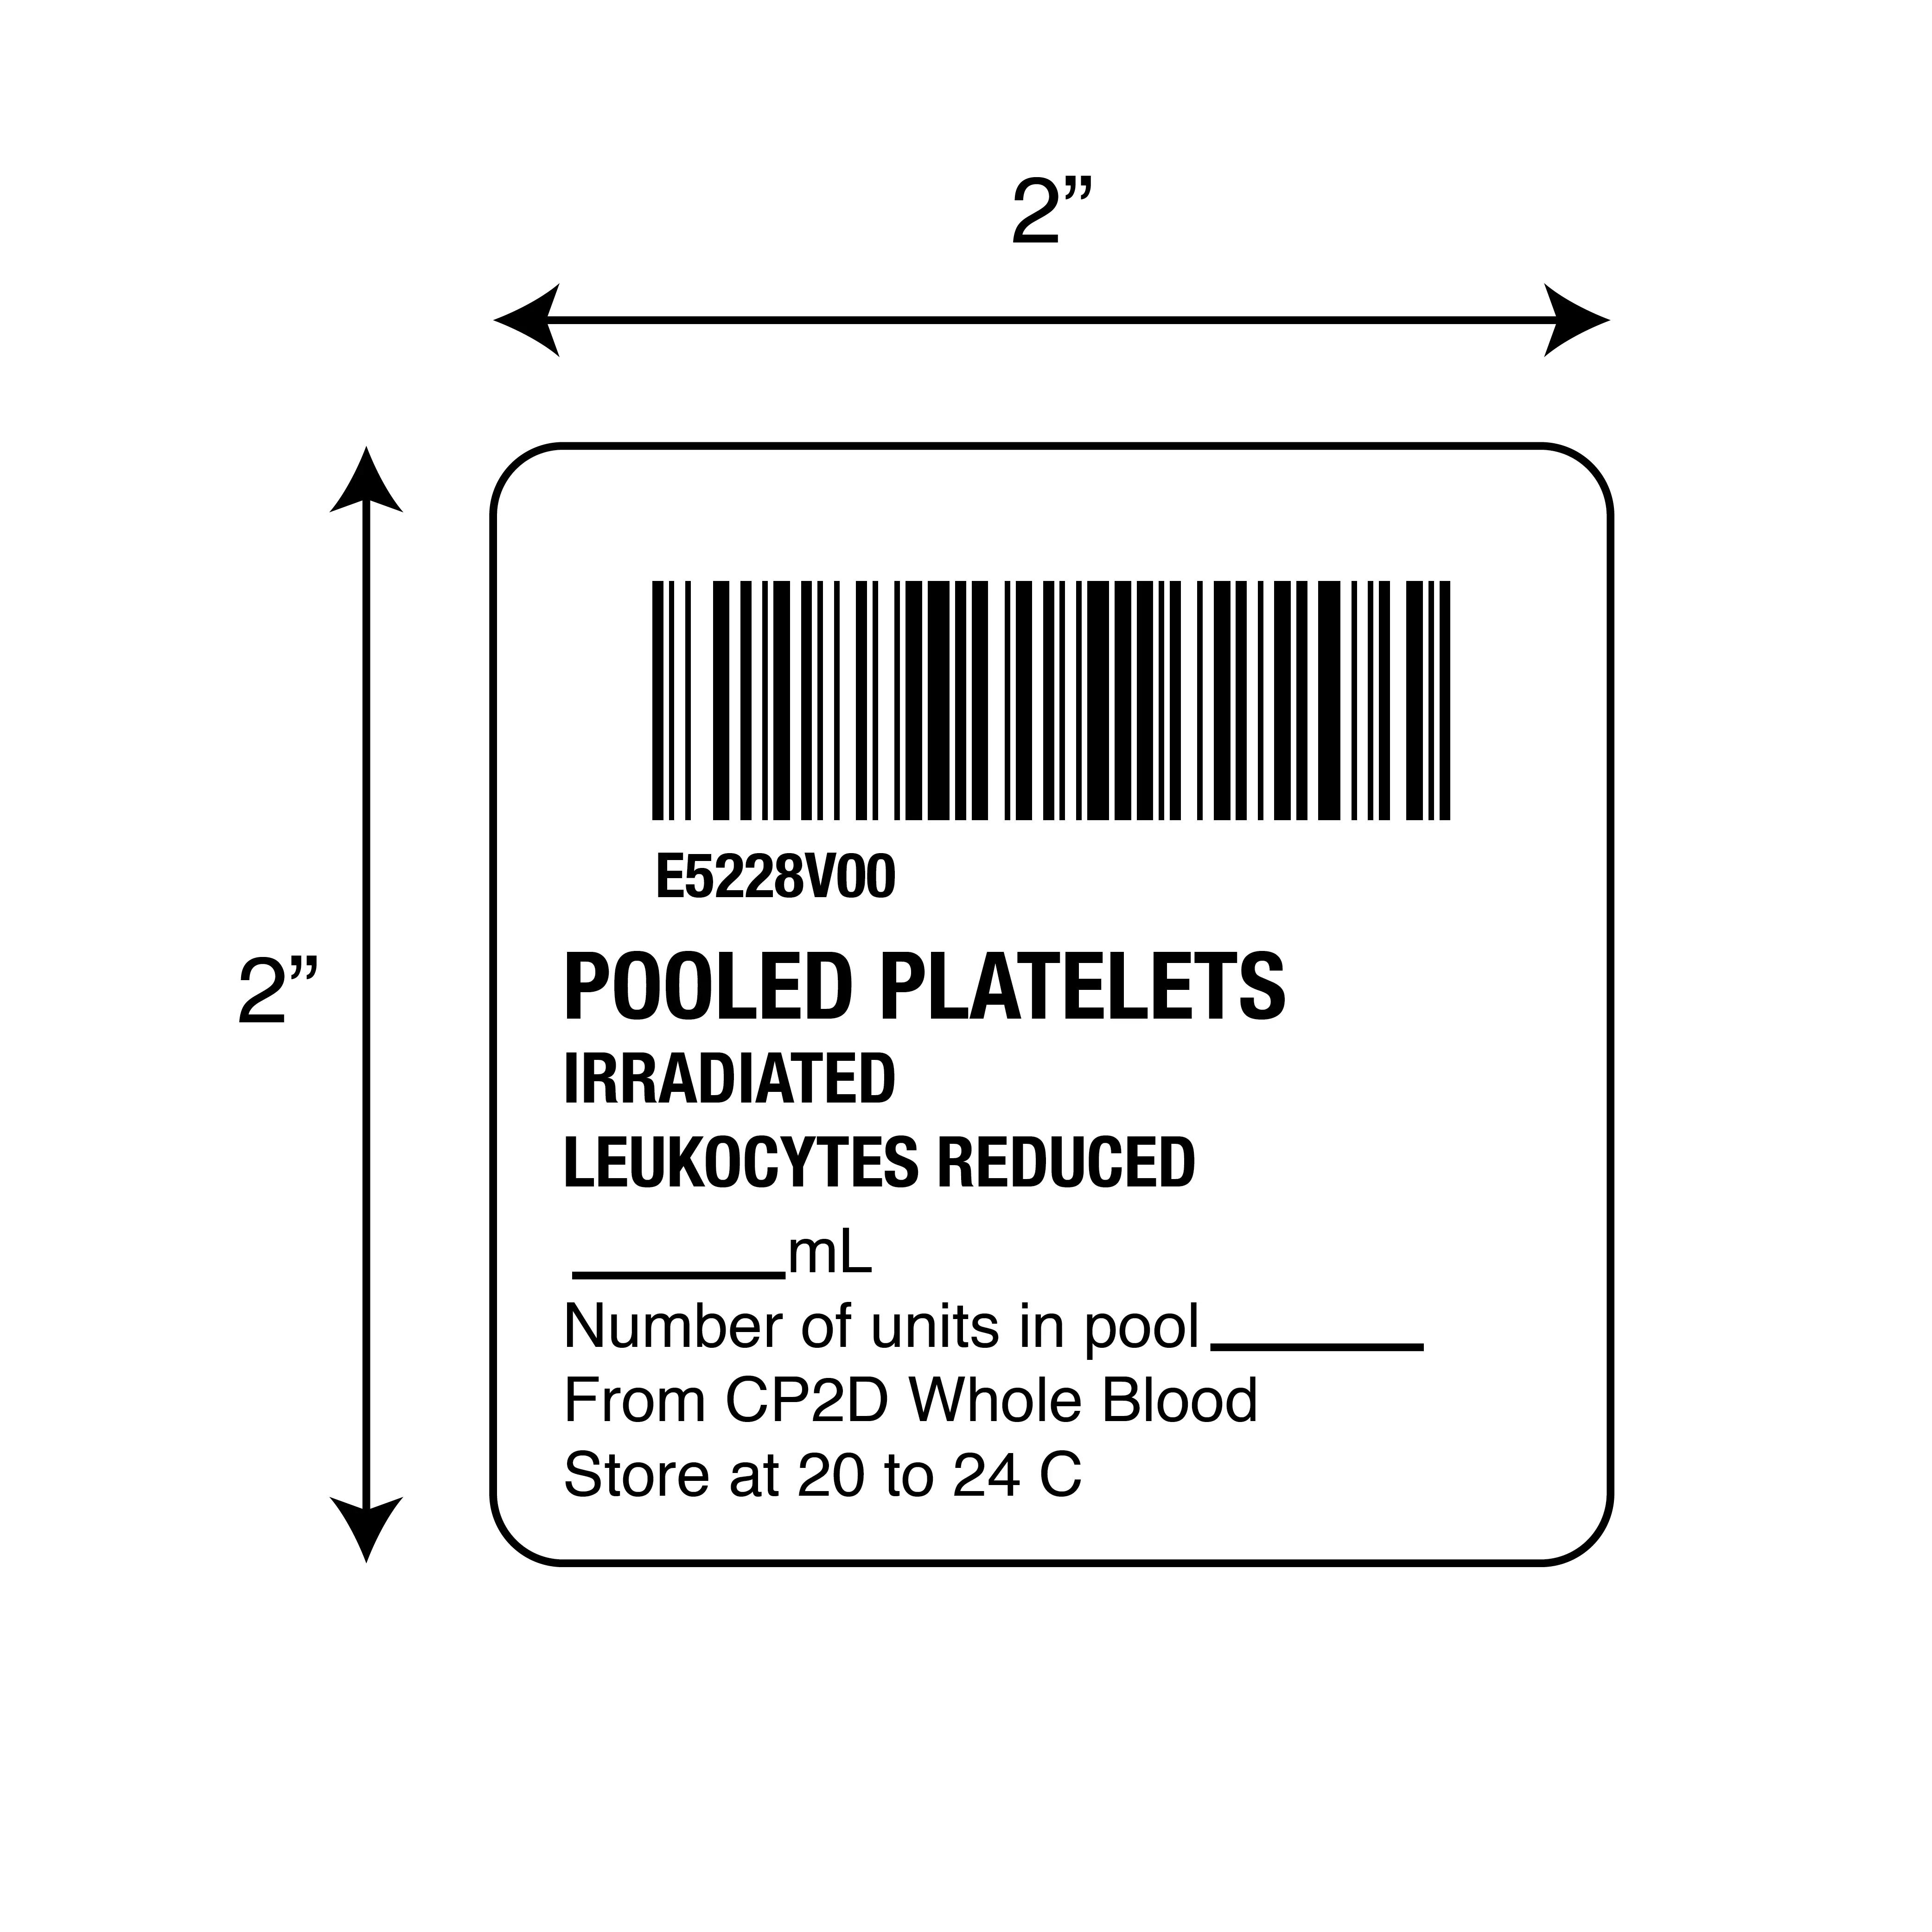 ISBT 128 Pooled Platelets Irradiated Leukocytes R